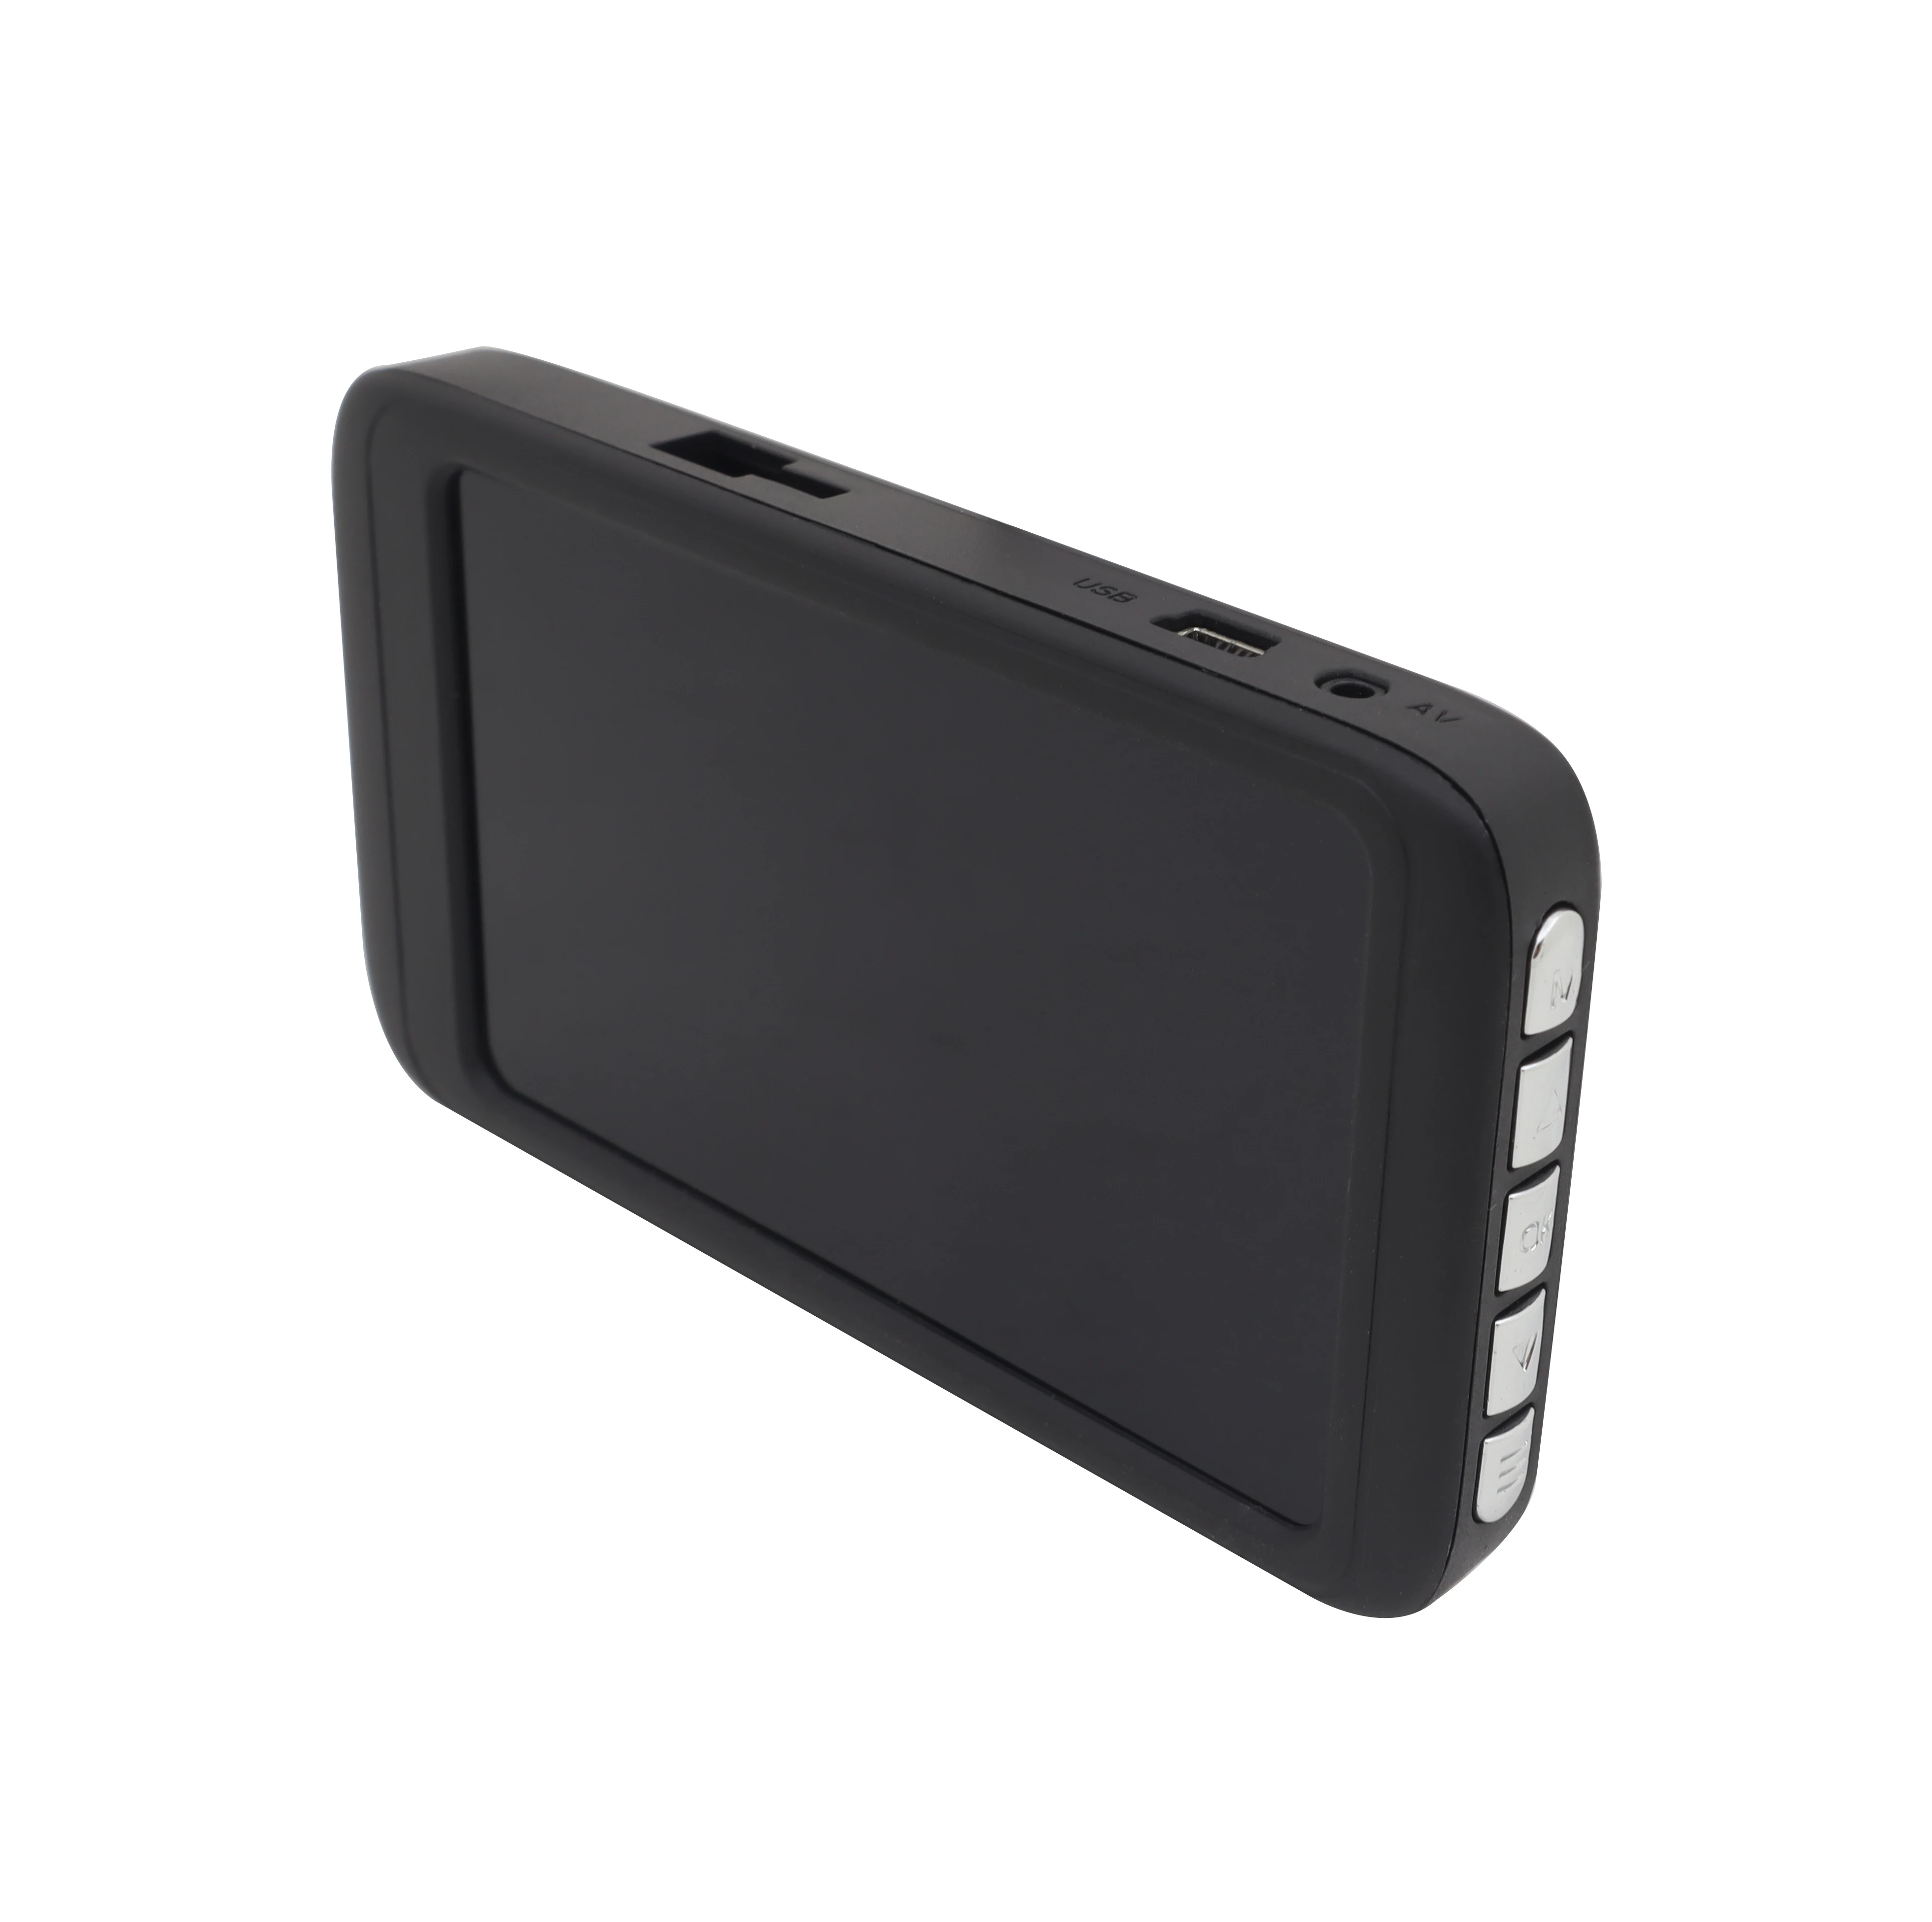 4 дюйма ips экран 800*480 Автомобильный цифровой видеорегистратор Видеорегистраторы для автомобилей Cam 1080HD Ночное видение Dash Cam Wifi